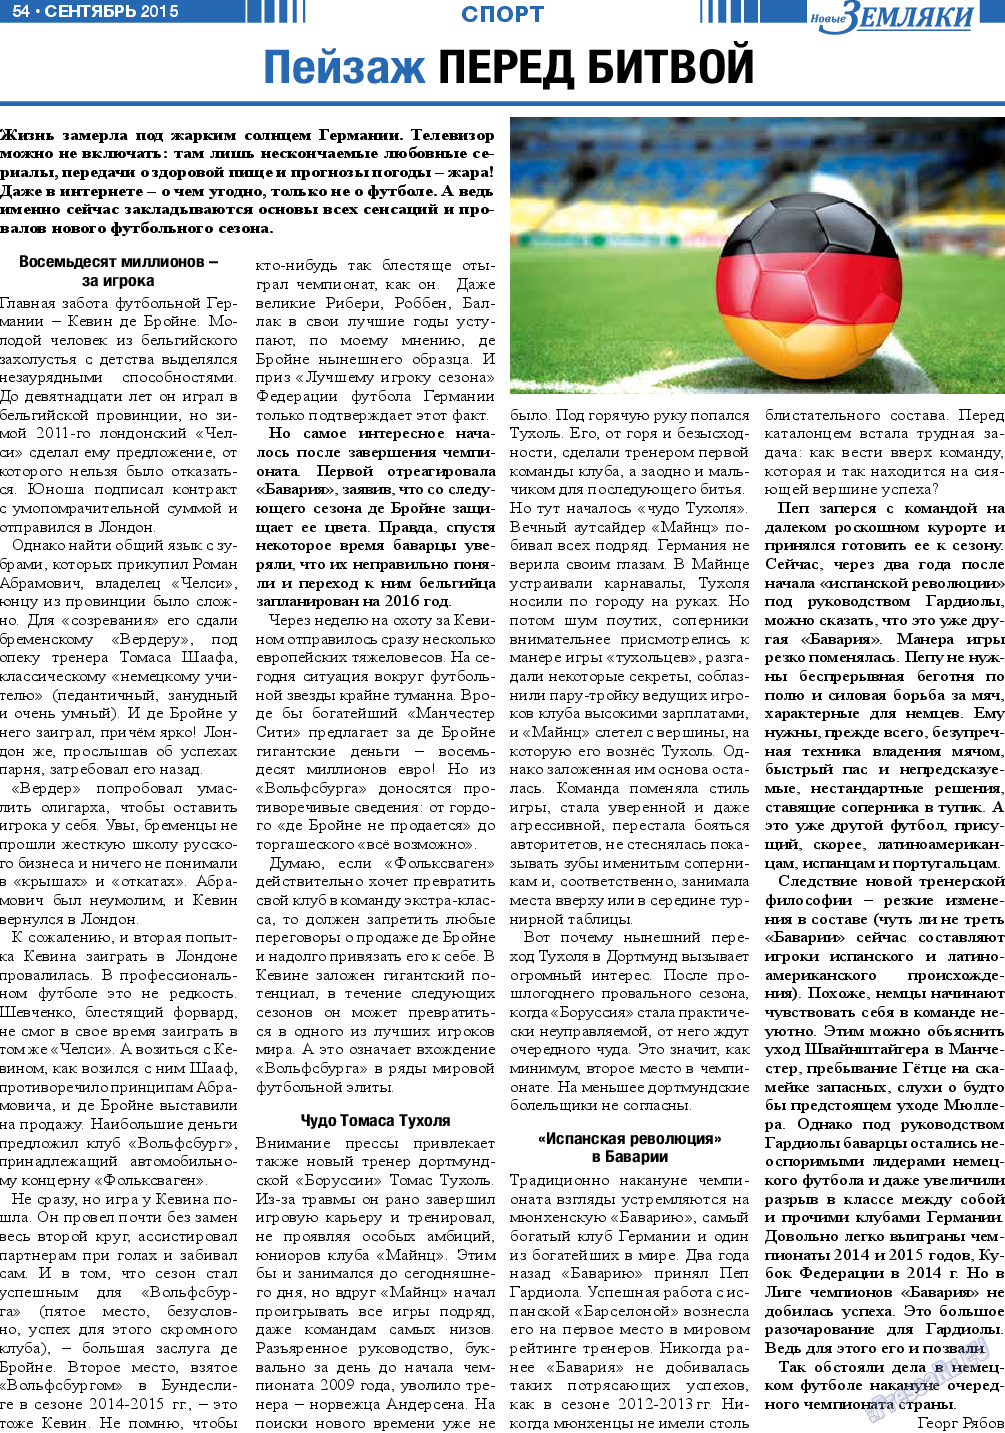 Новые Земляки, газета. 2015 №9 стр.54